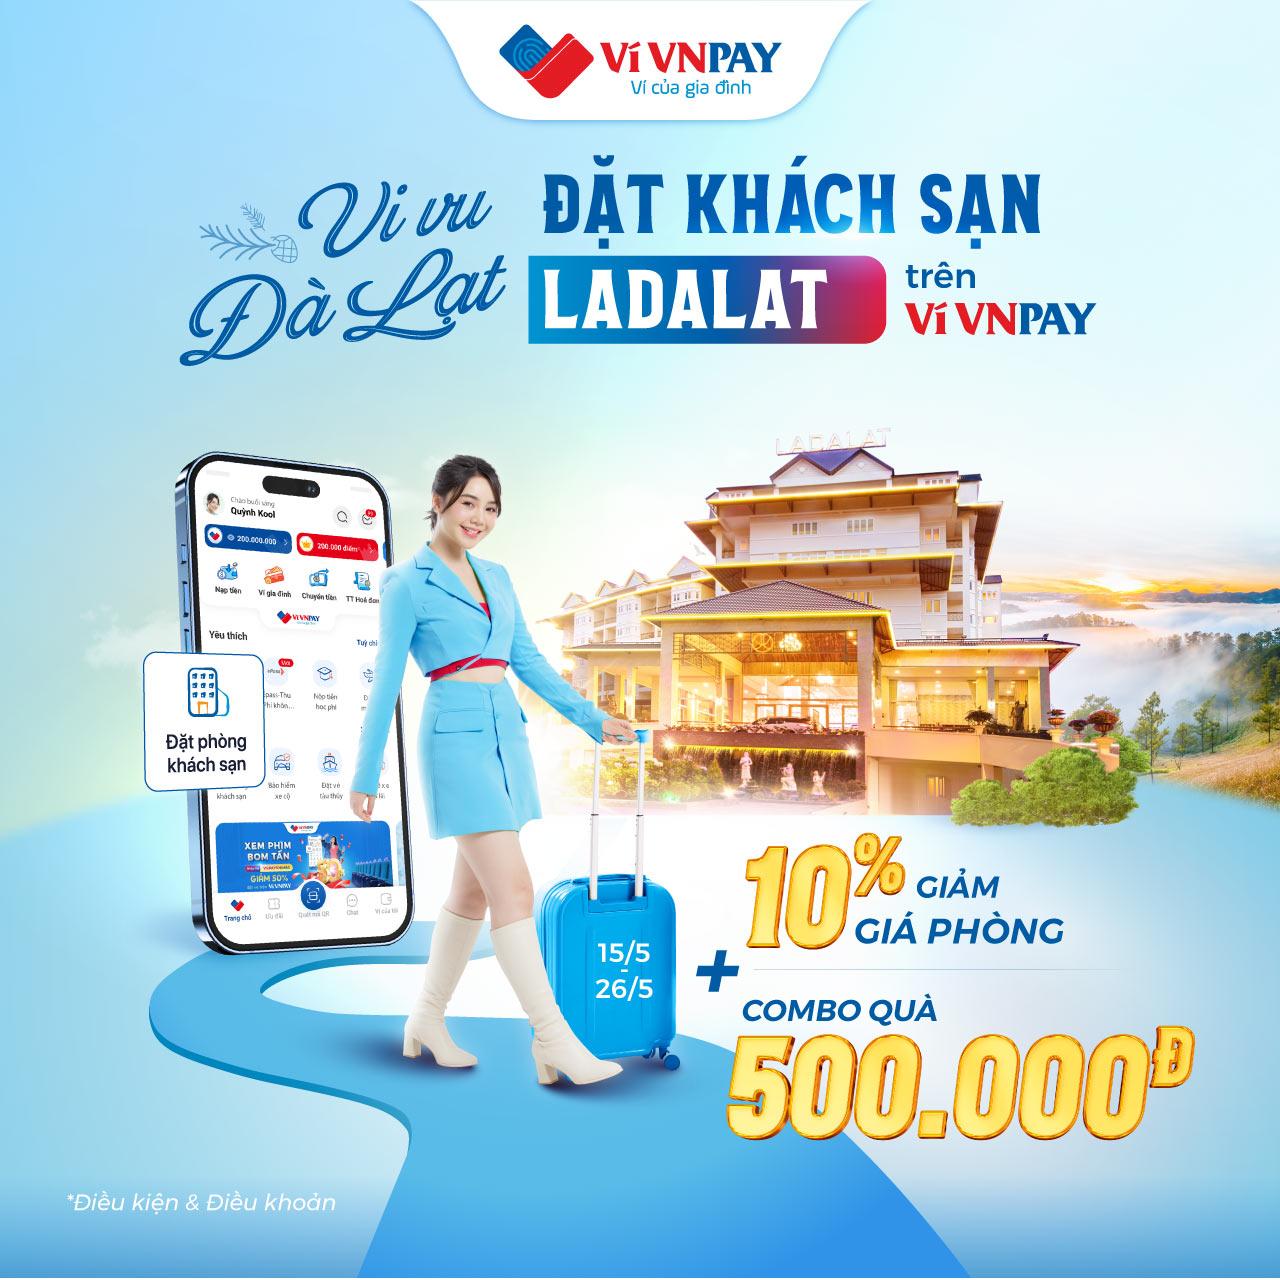 Tiết kiệm lớn: Rinh “deal hời” tới 500.000 đồng khi gọi taxi, đặt phòng khách sạn trên ví VNPAY